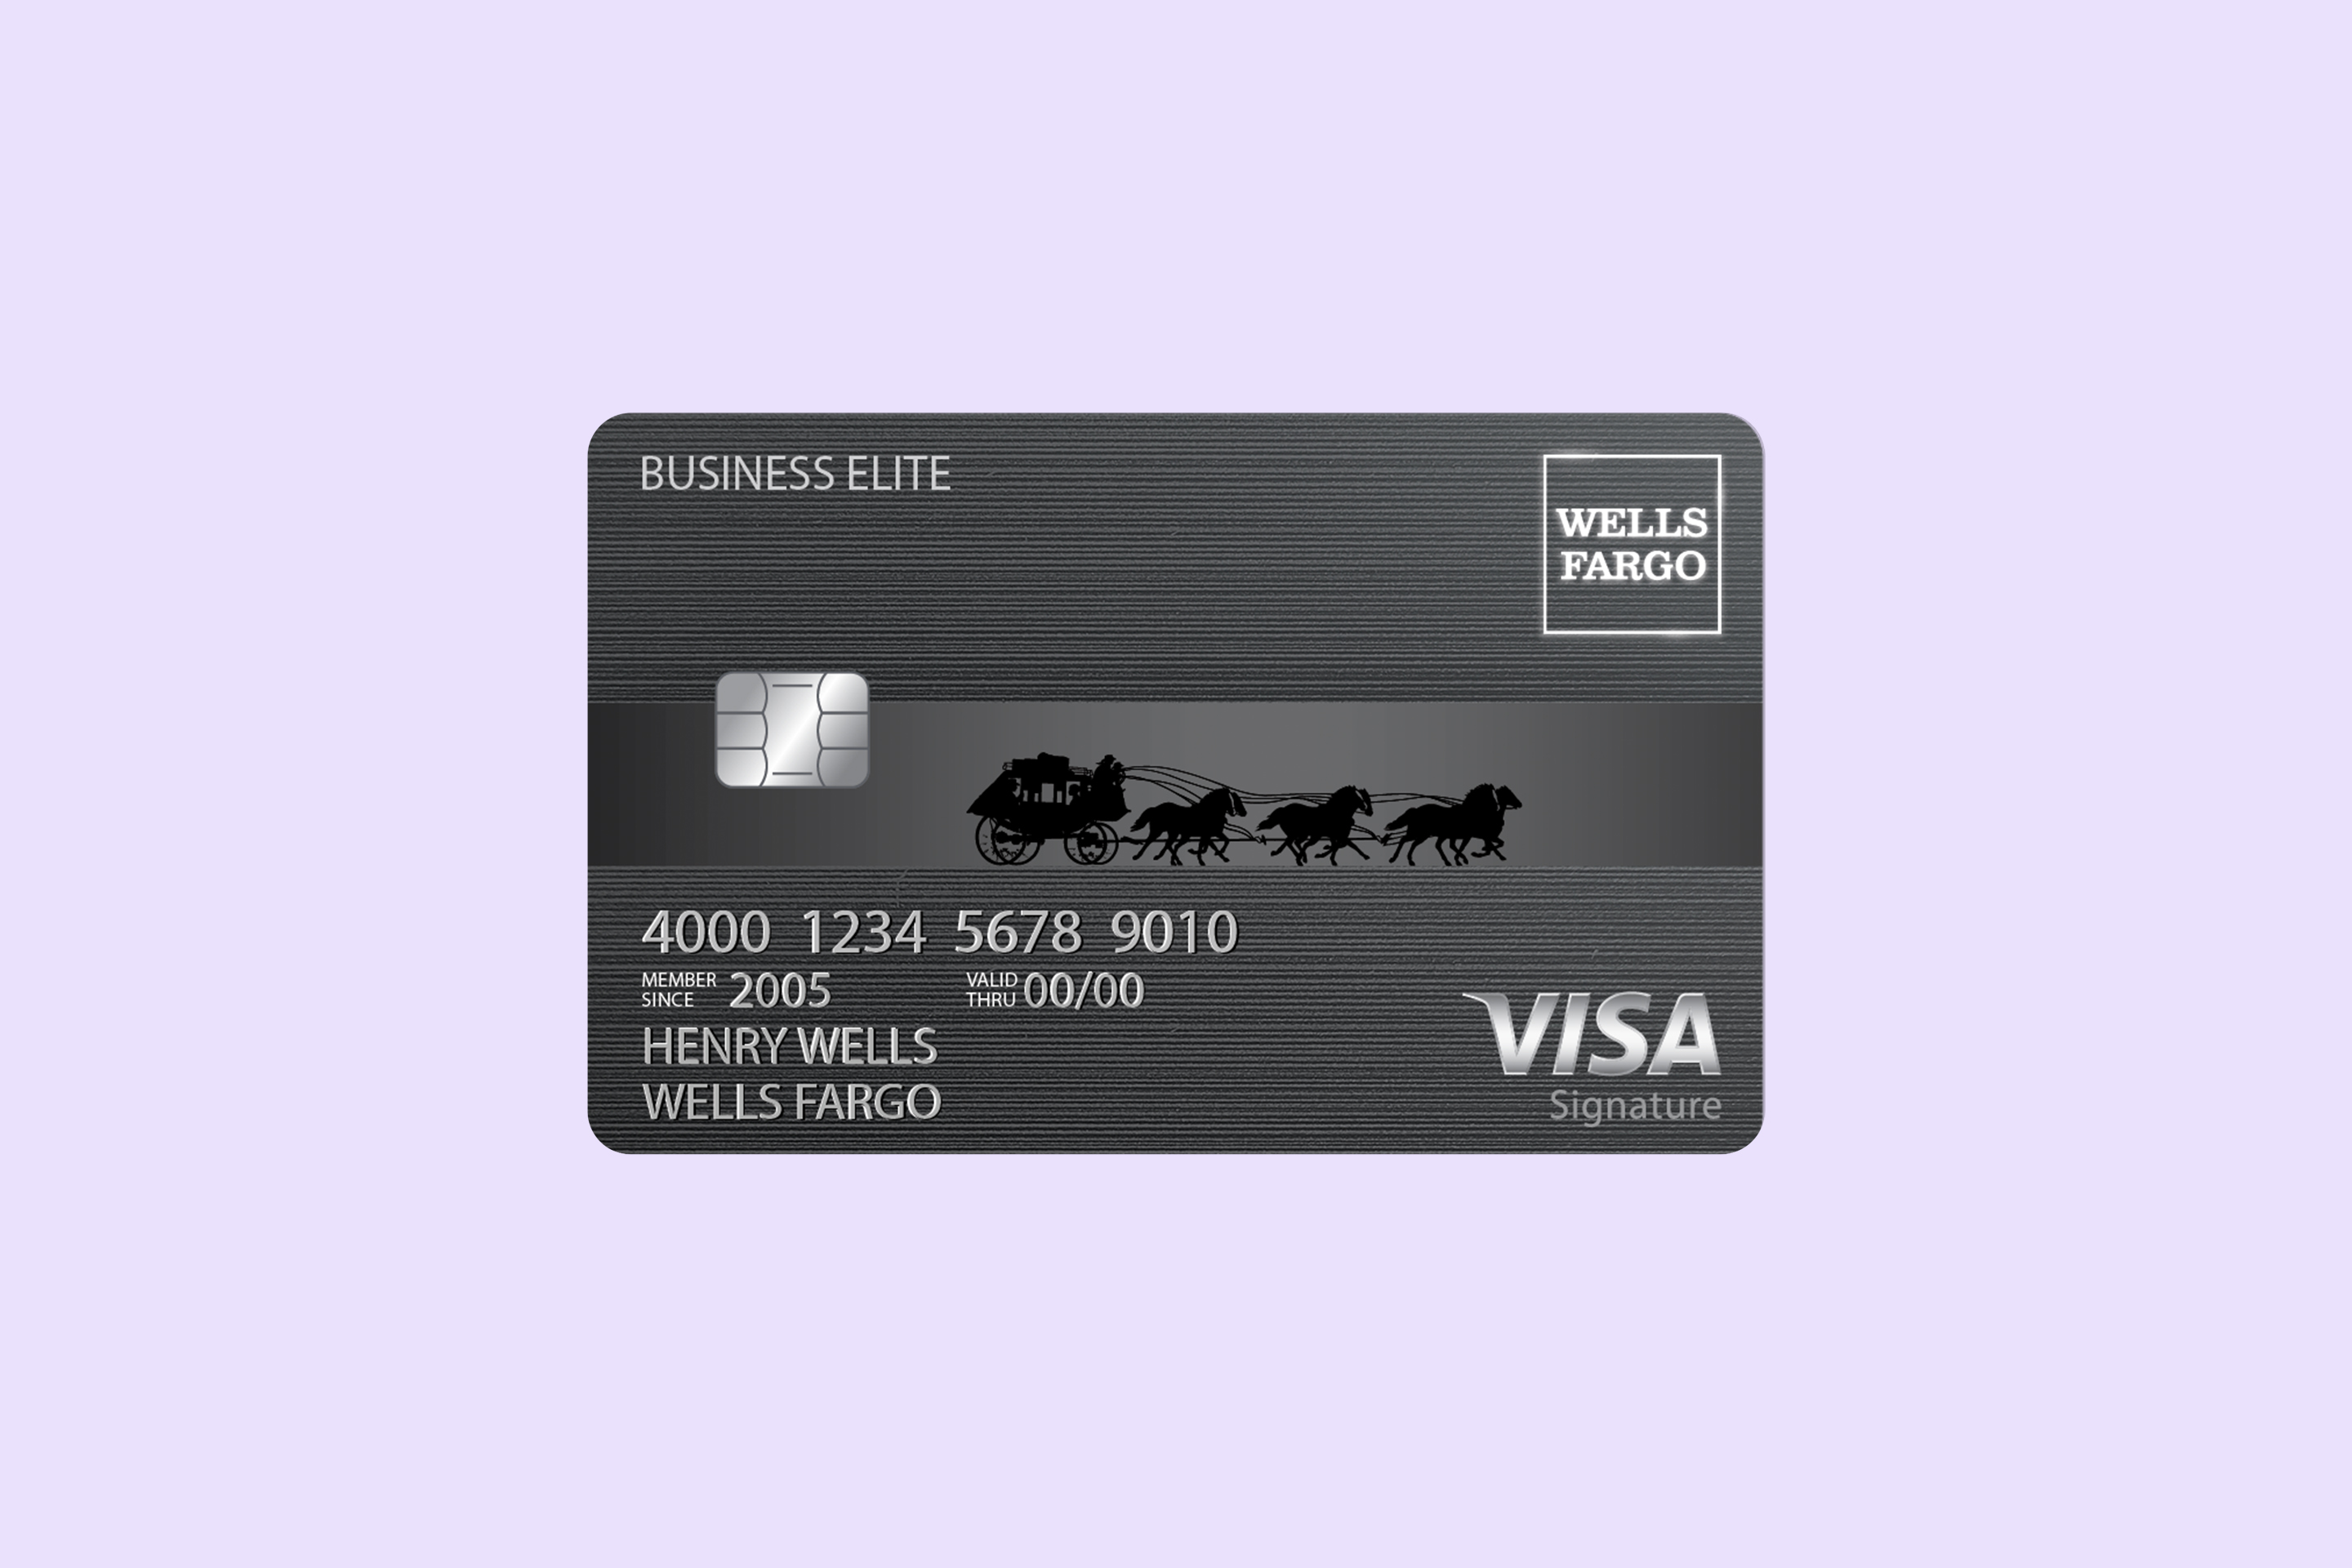 Wells Fargo Business Elite Signature Card